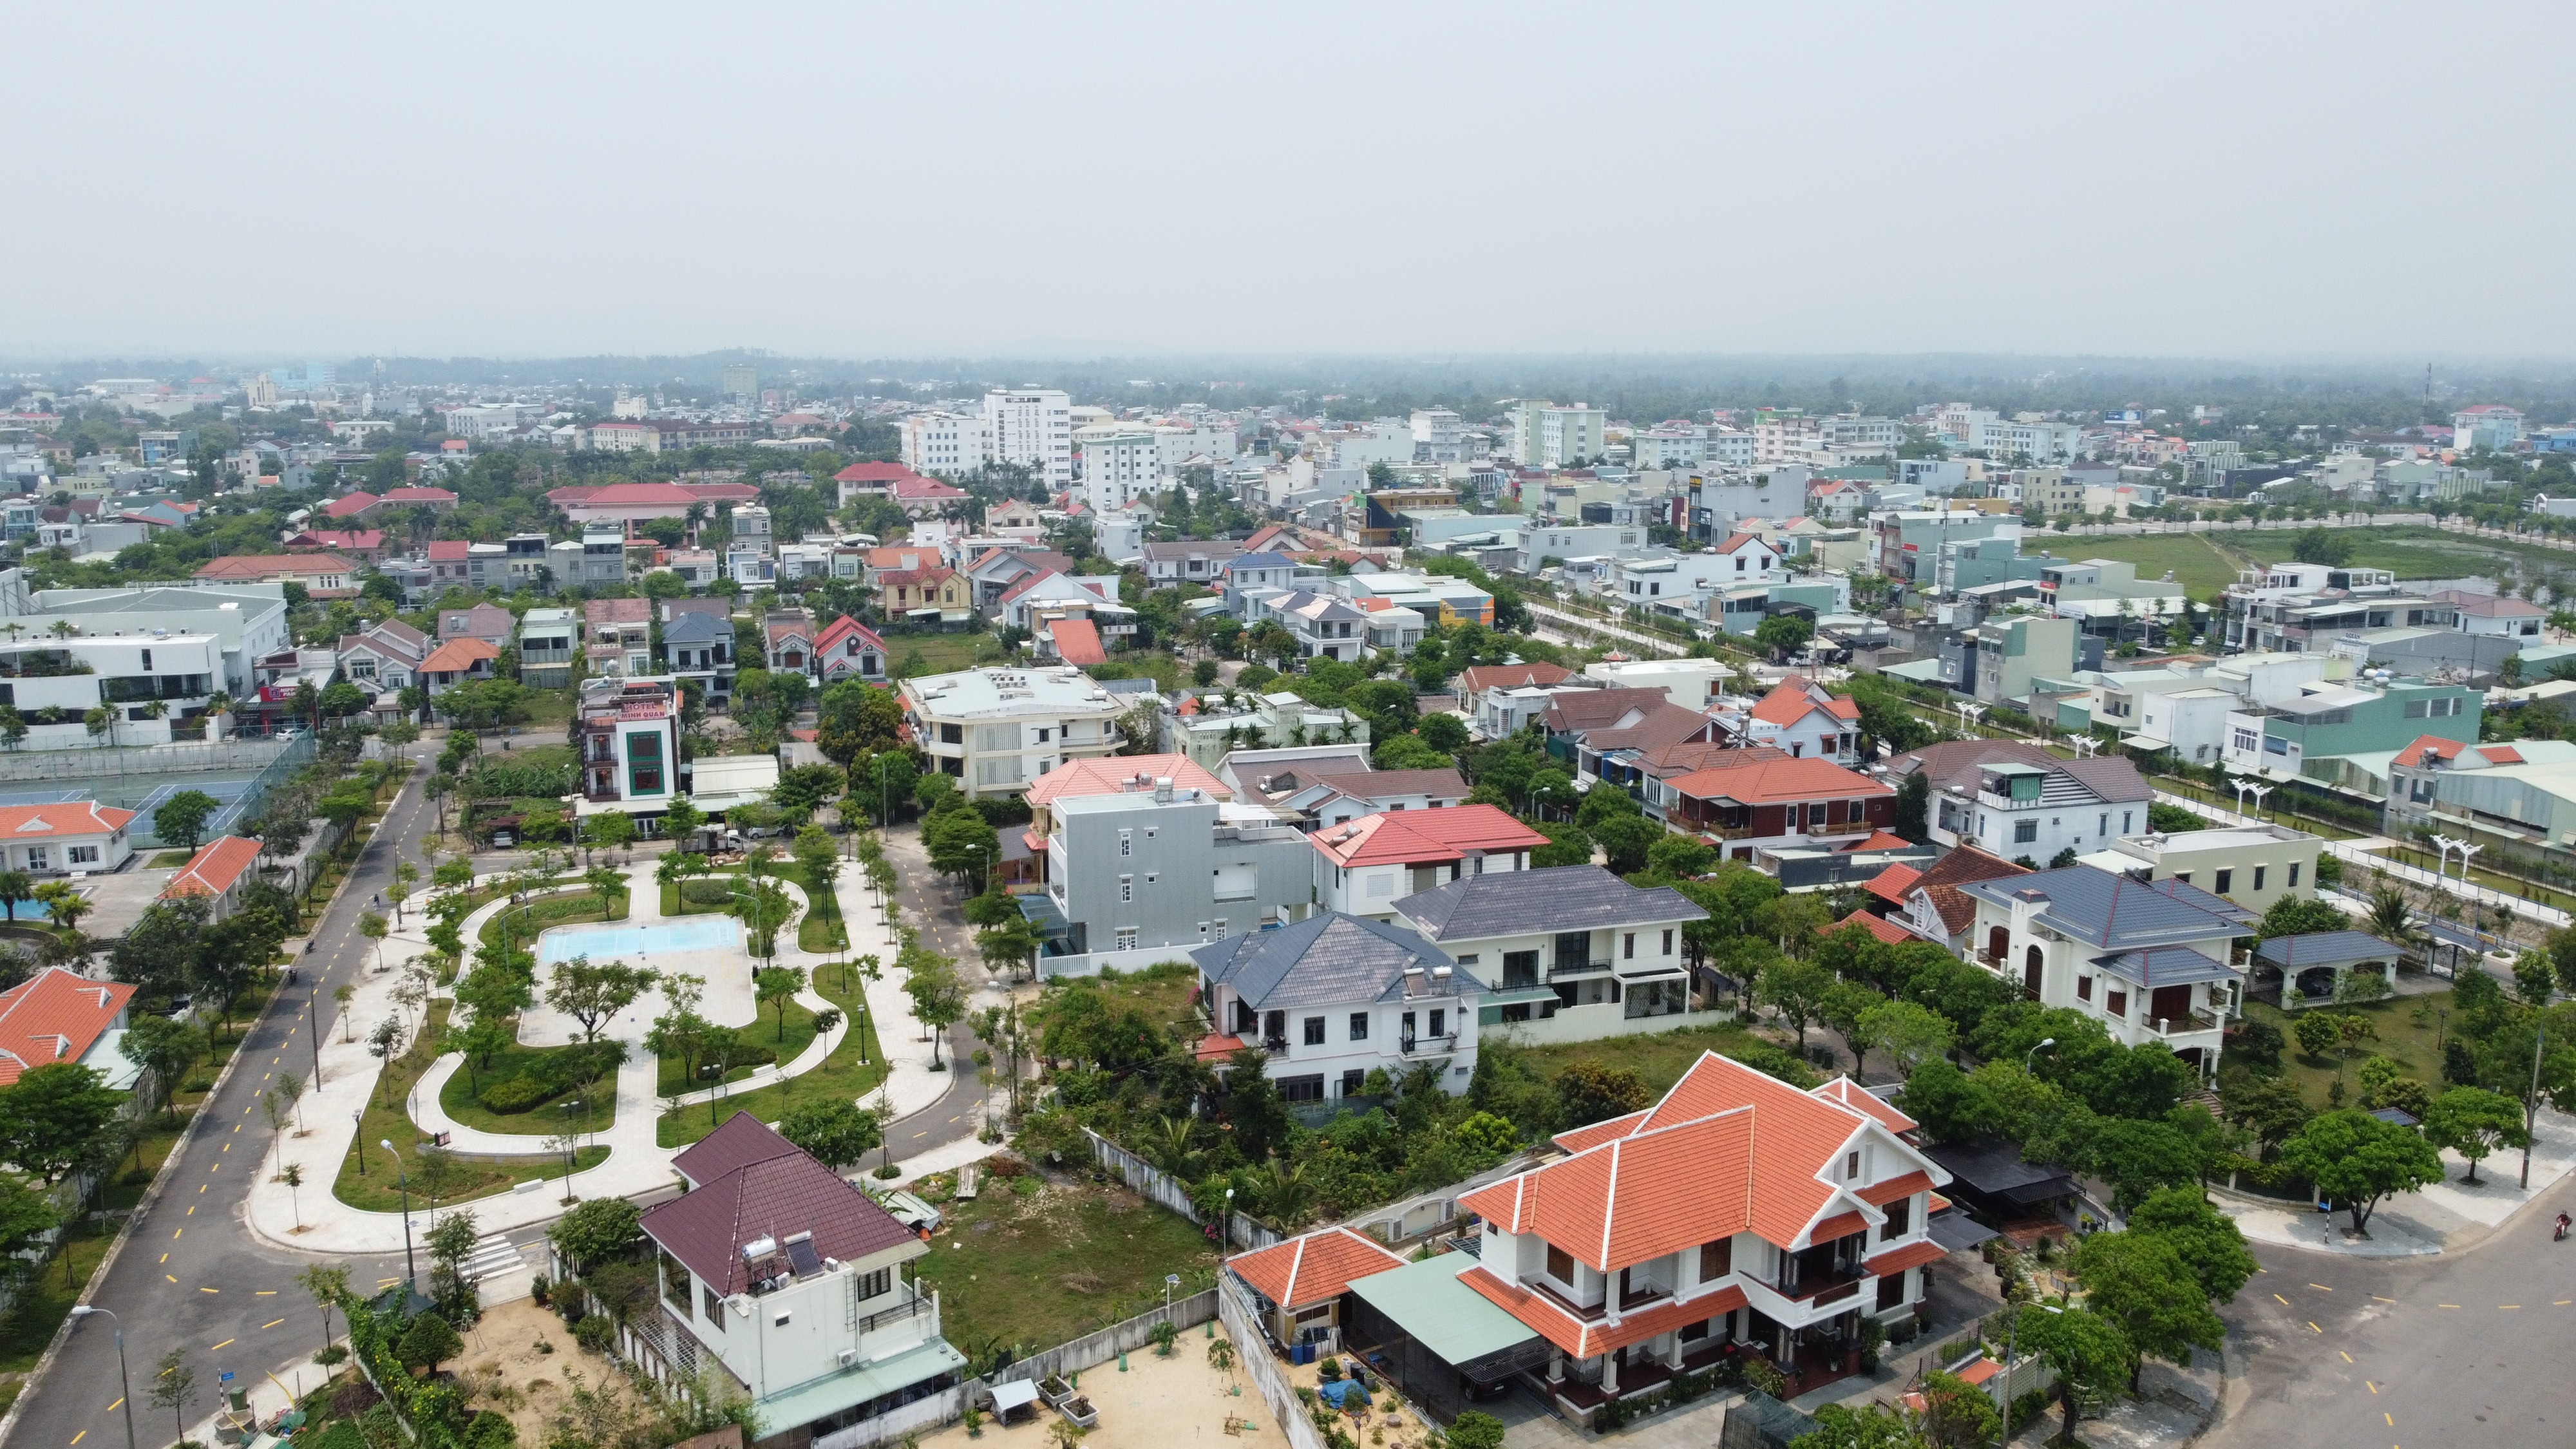 Quảng Nam: Rà soát, hủy bỏ các quy hoạch quá thời gian quy định